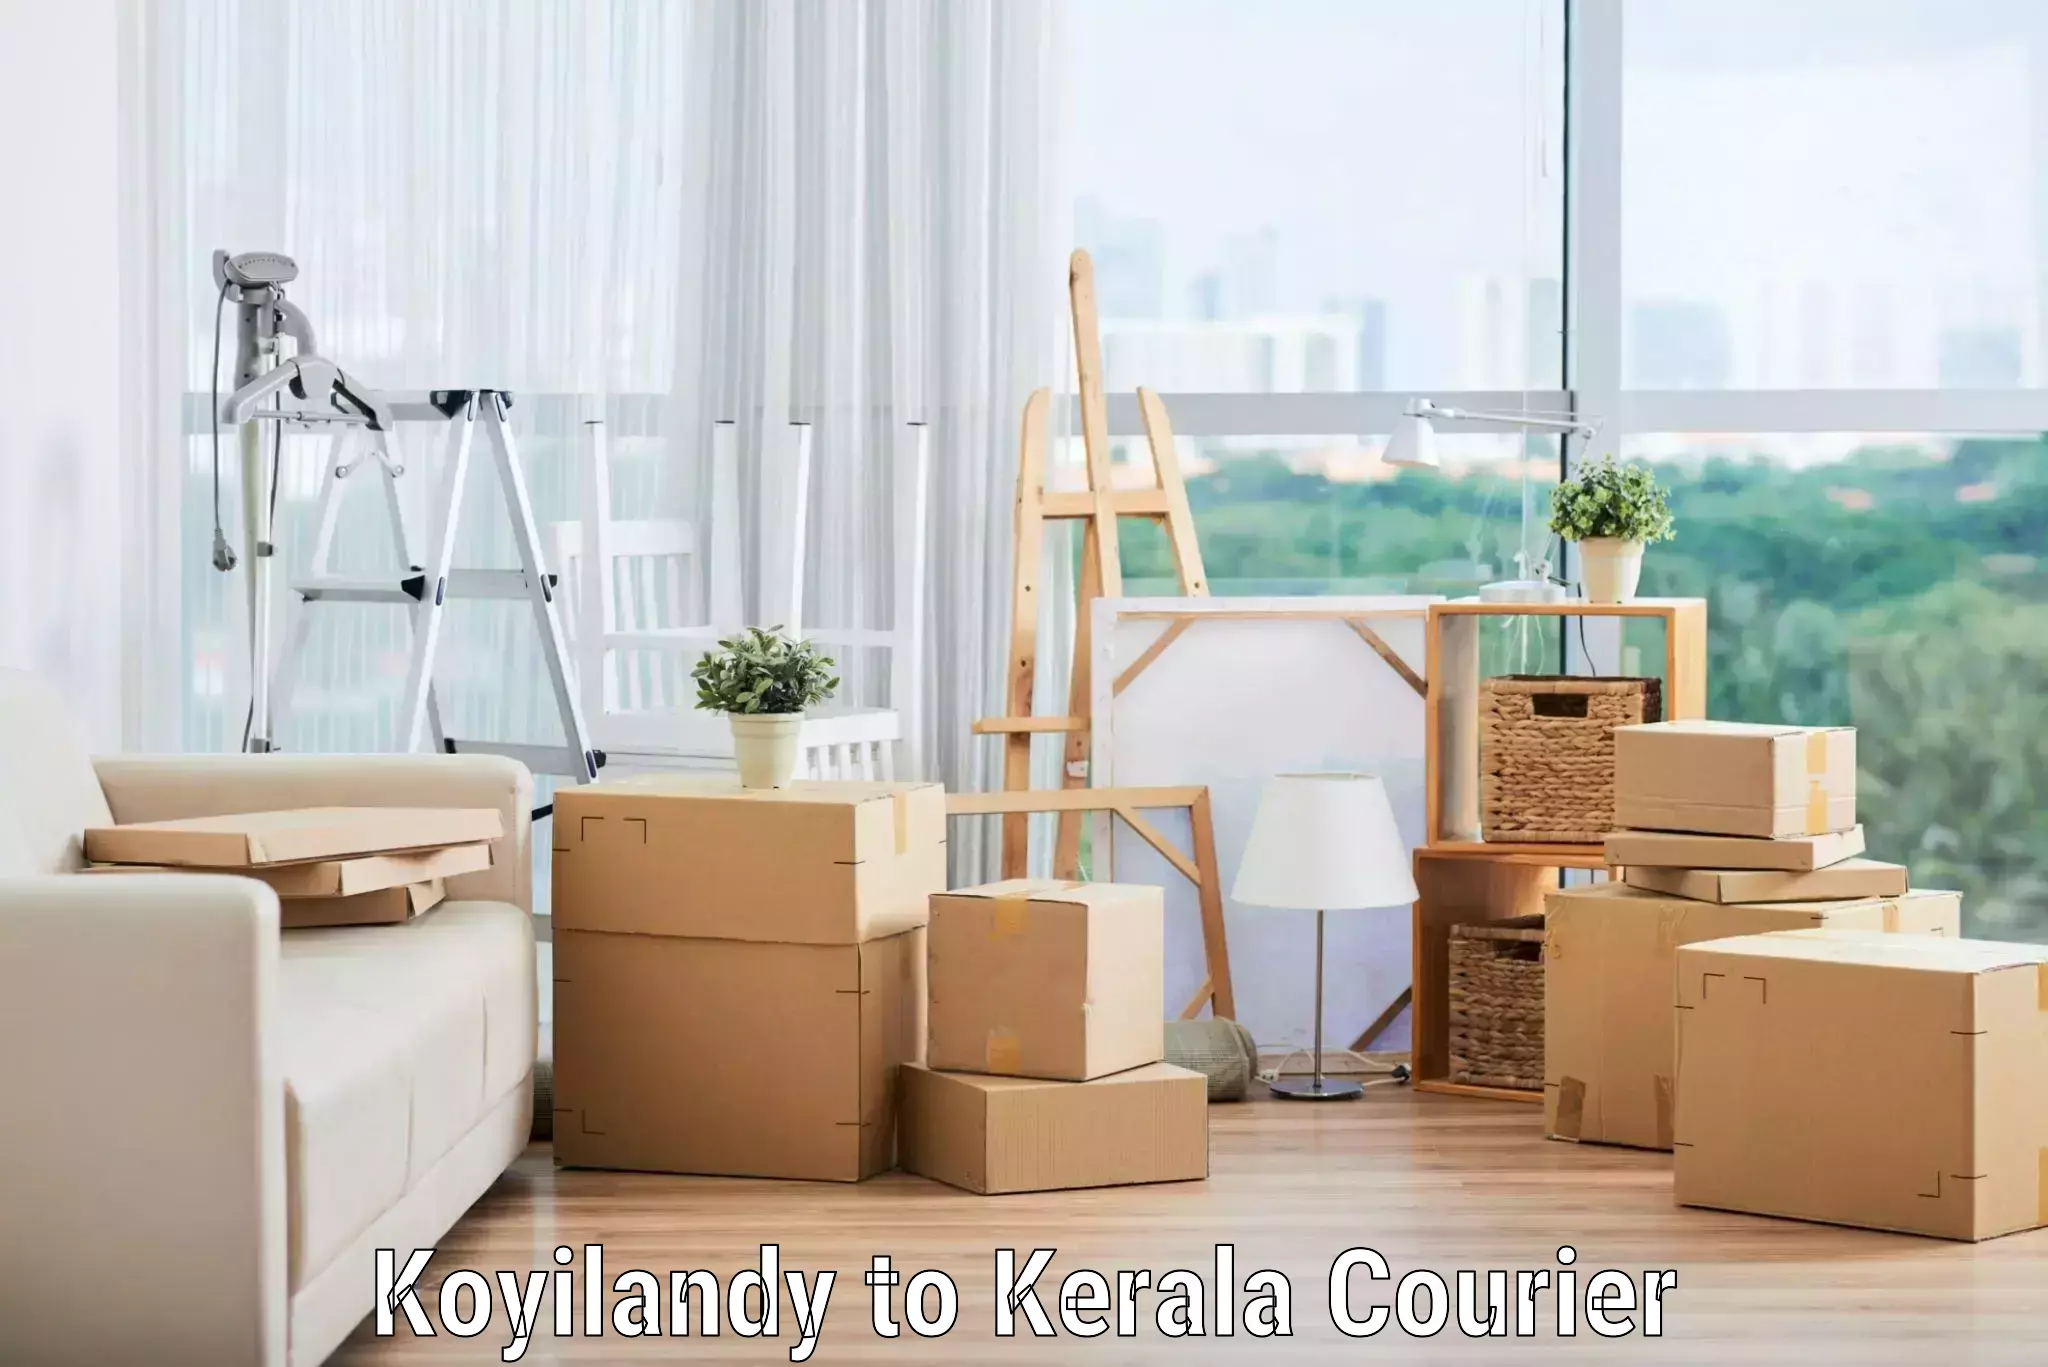 Comprehensive goods transport in Koyilandy to Kerala